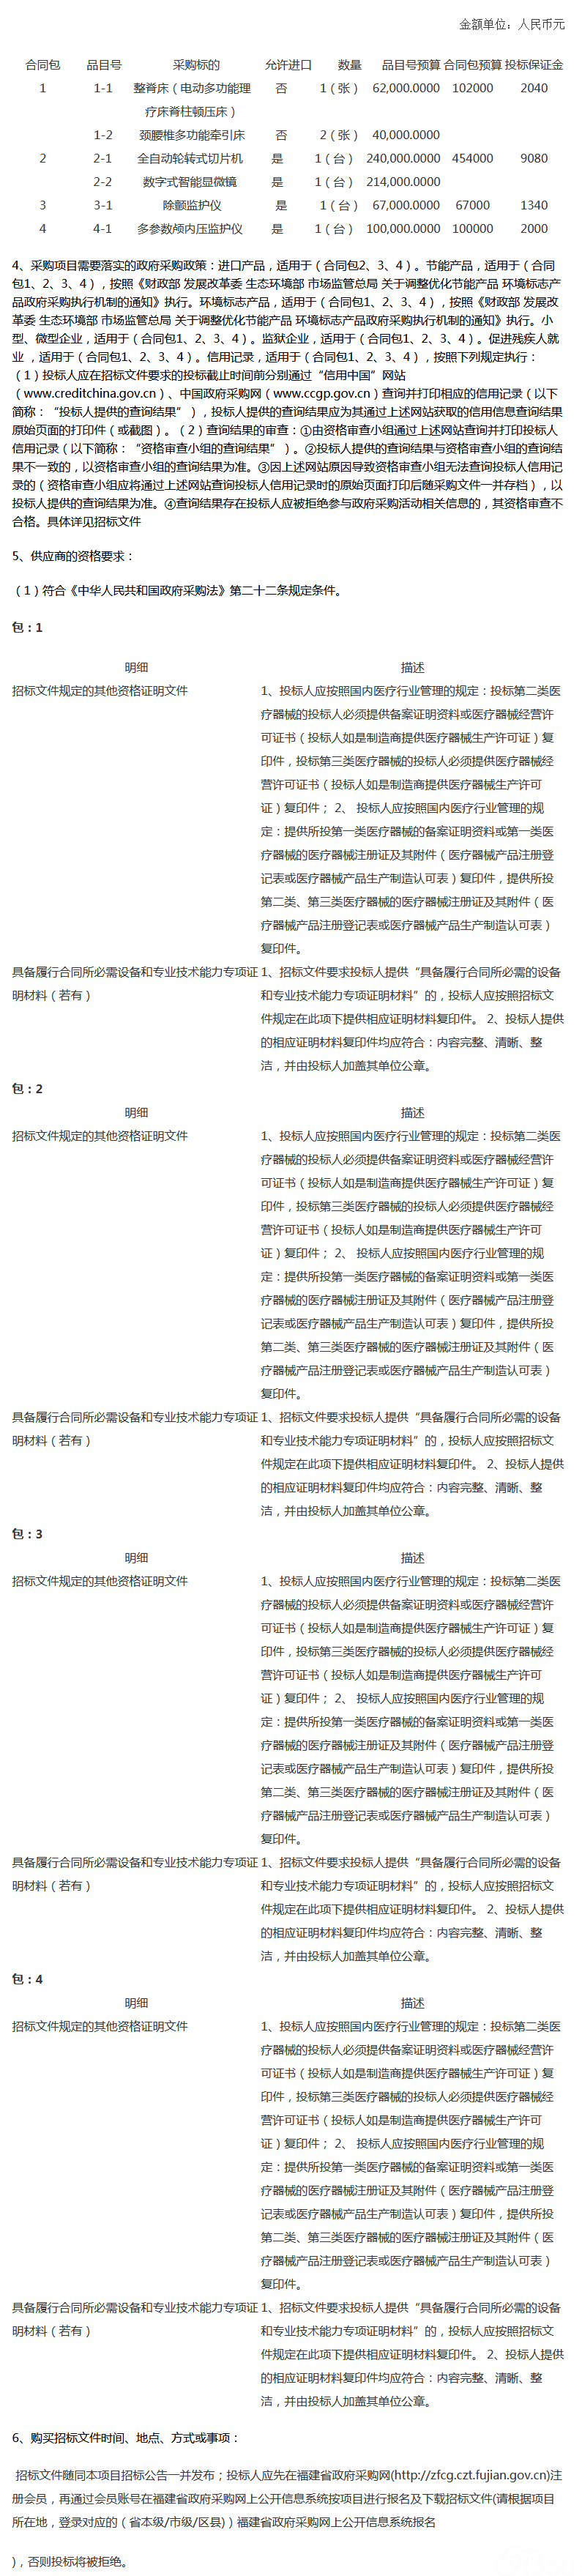 福建省漳州市中医院医疗设备02包（病理、外科、介入、康复）项目采购招标公告